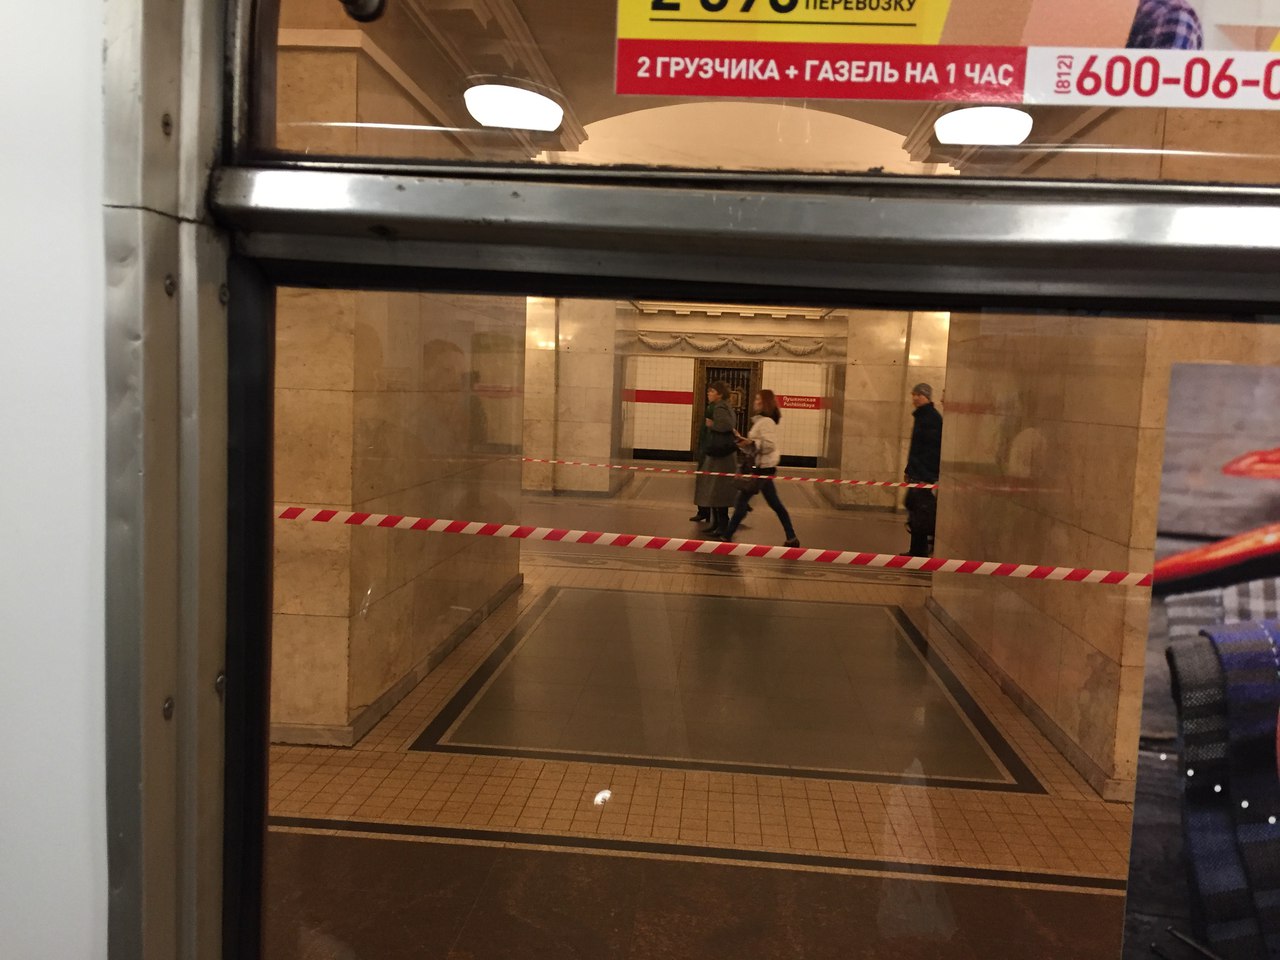 Станцию "Пушкинская" закрыли по техническим причинам